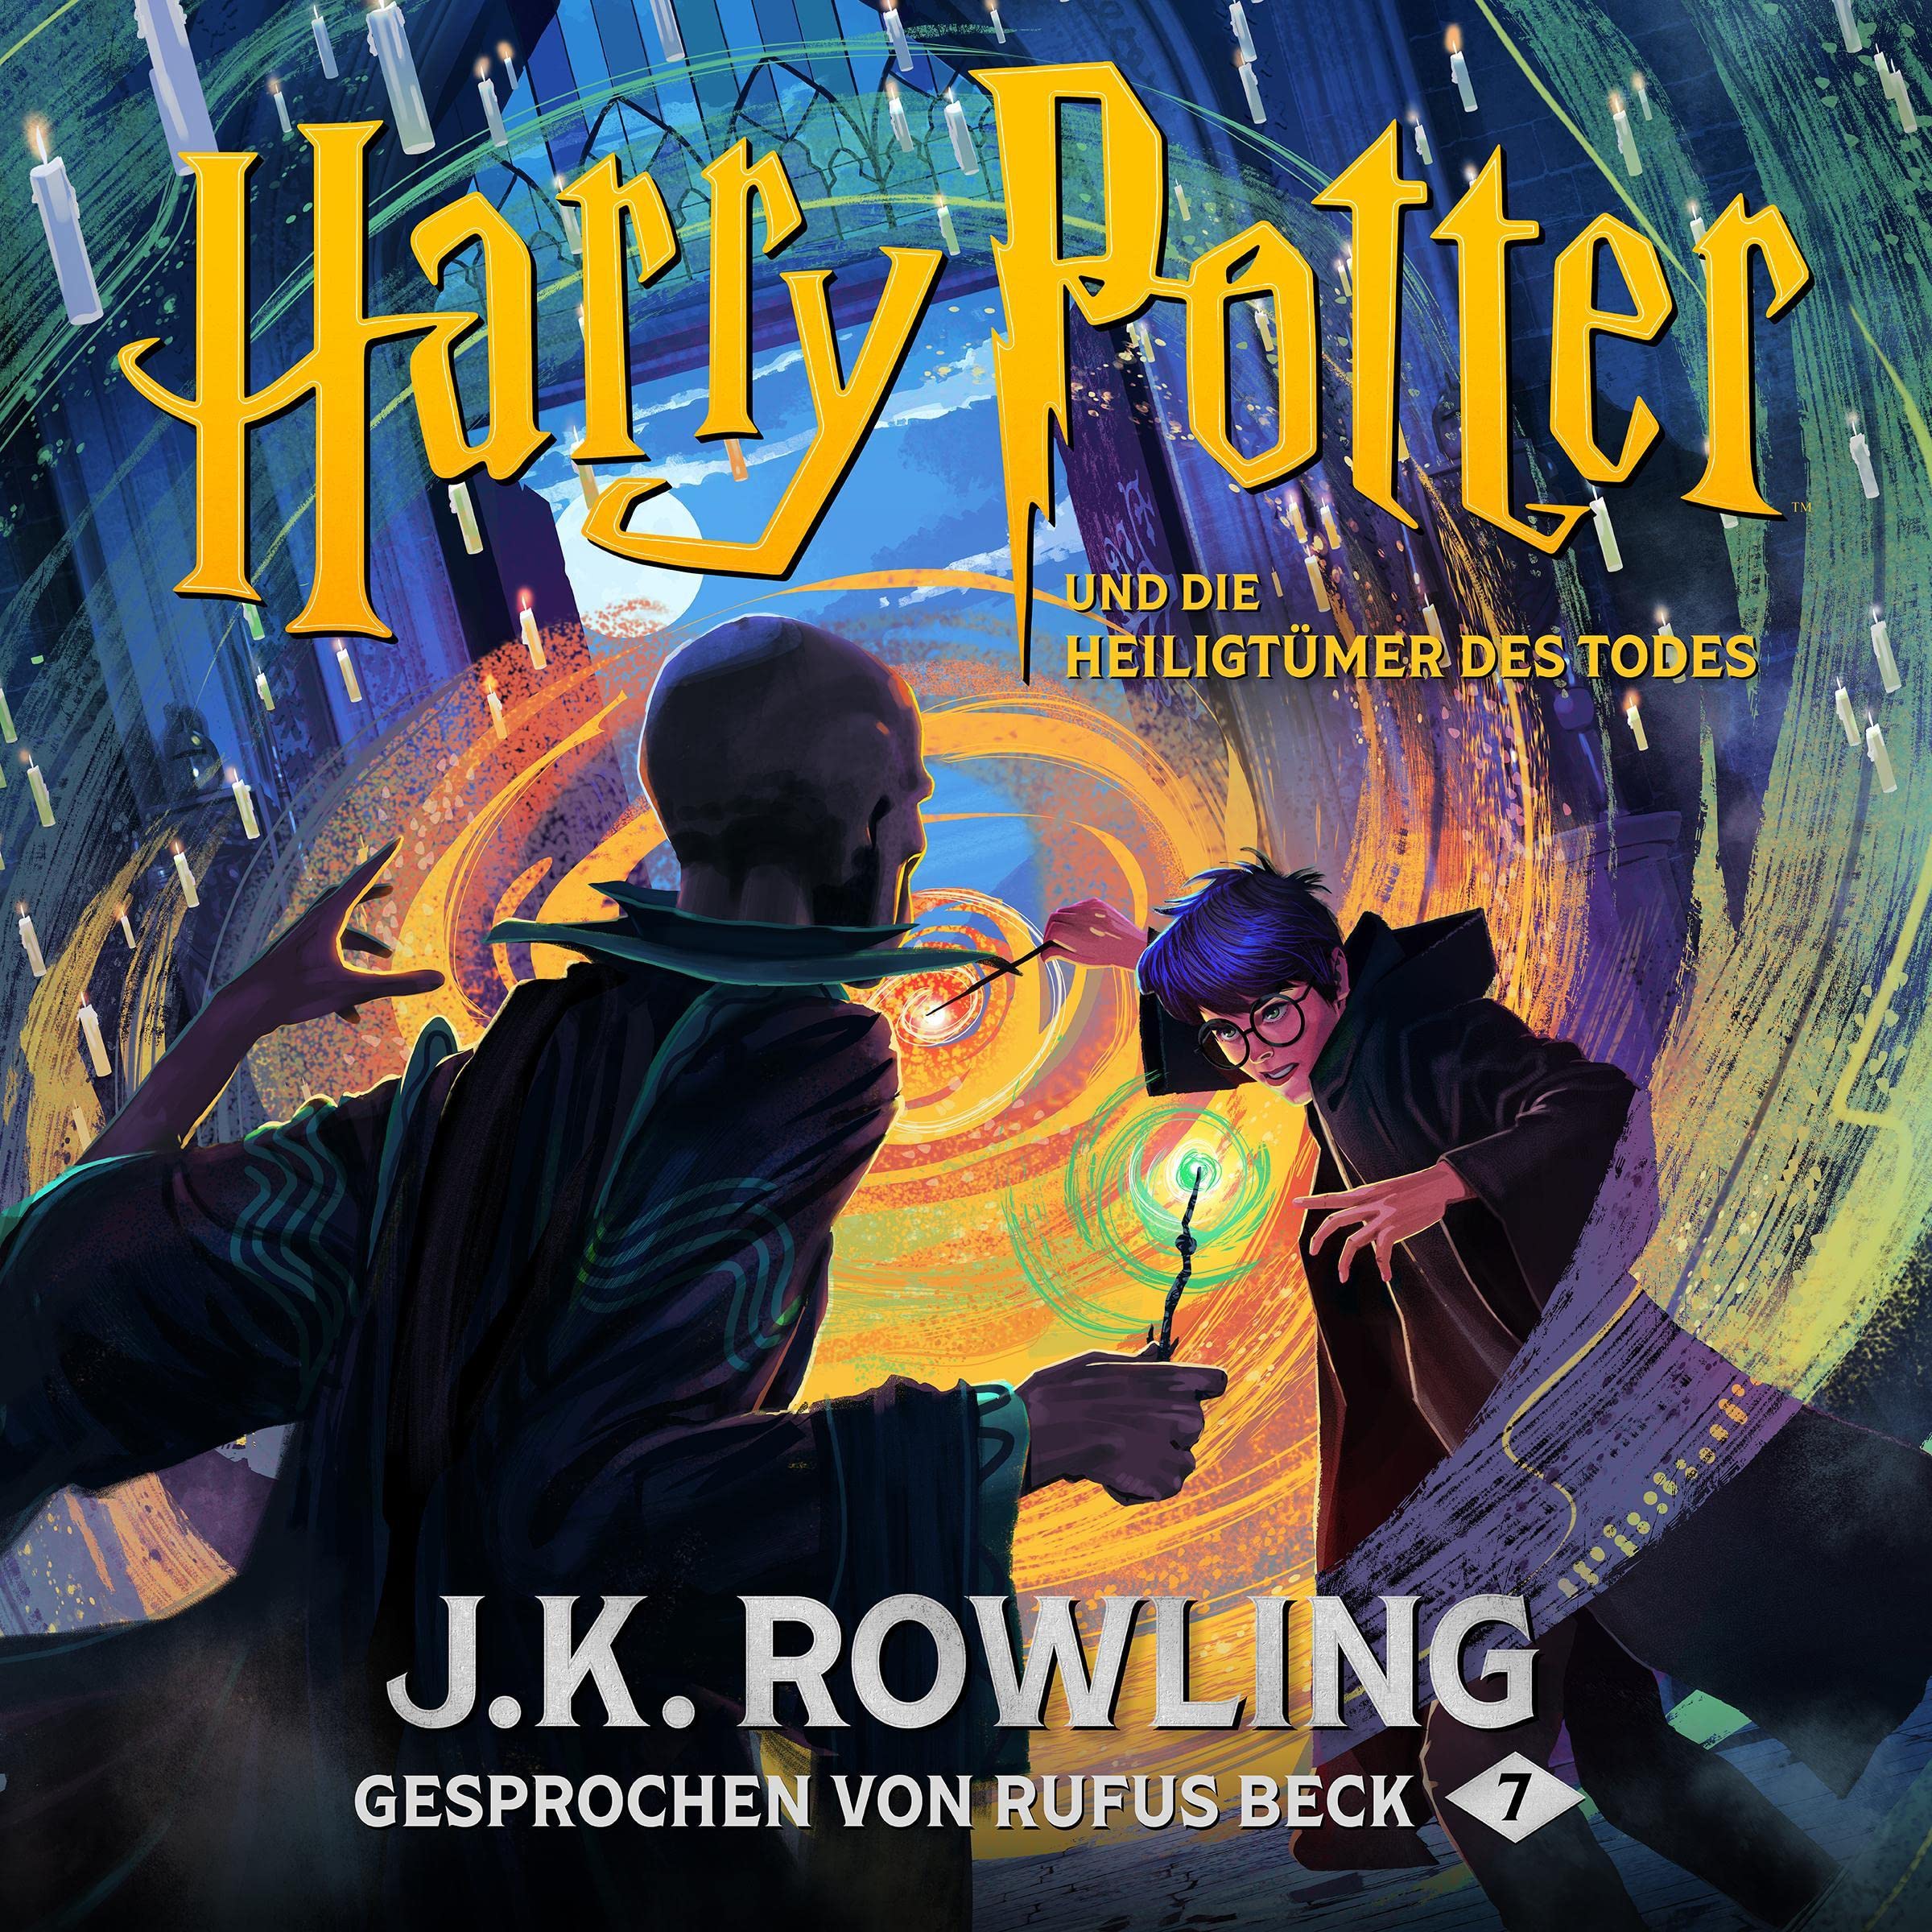 Harry Potter und die Heiligtümer des Todes - Gesprochen von Rufus Beck: Harry Potter 7